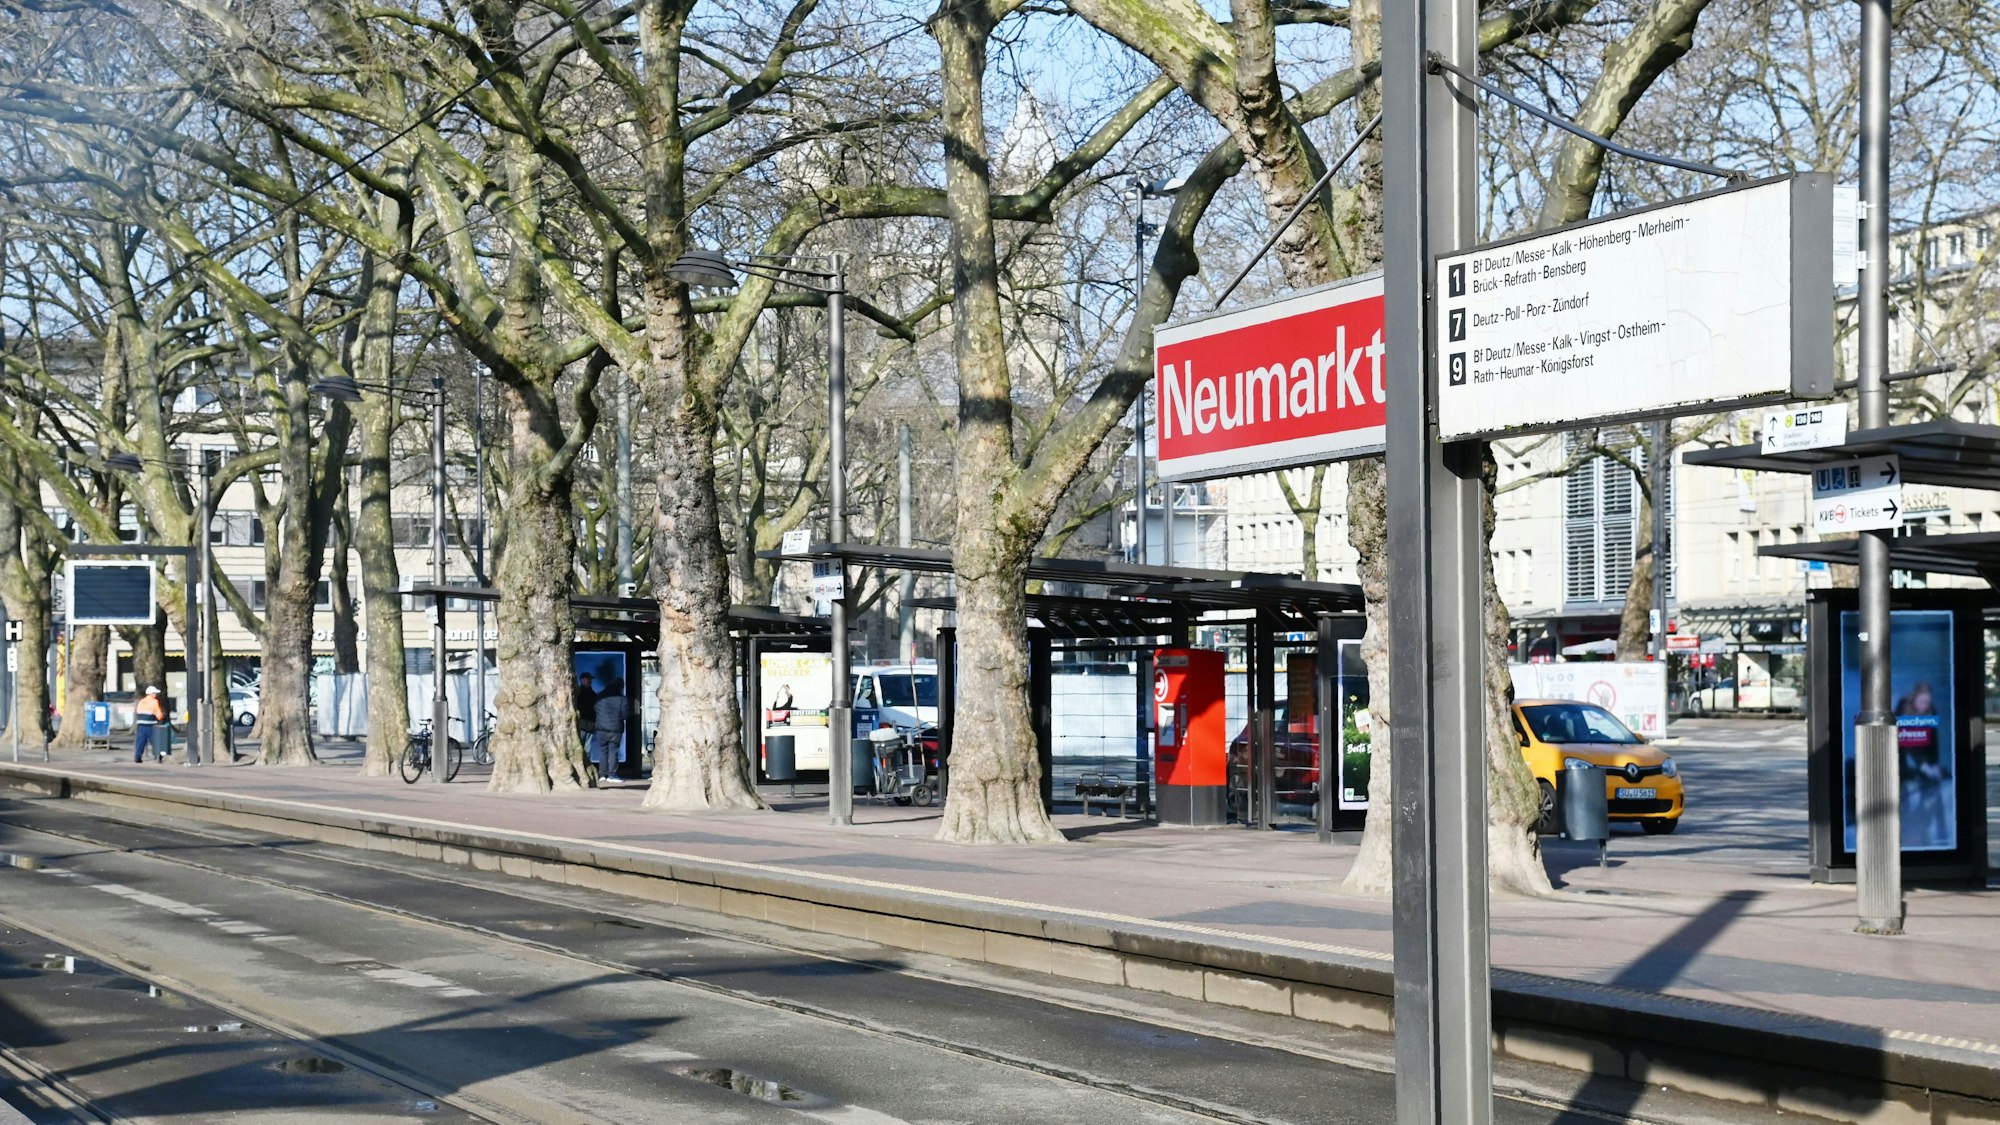 Blick auf den leeren Bahnsteig am Neumarkt in Köln während eines Streiks der KVB.